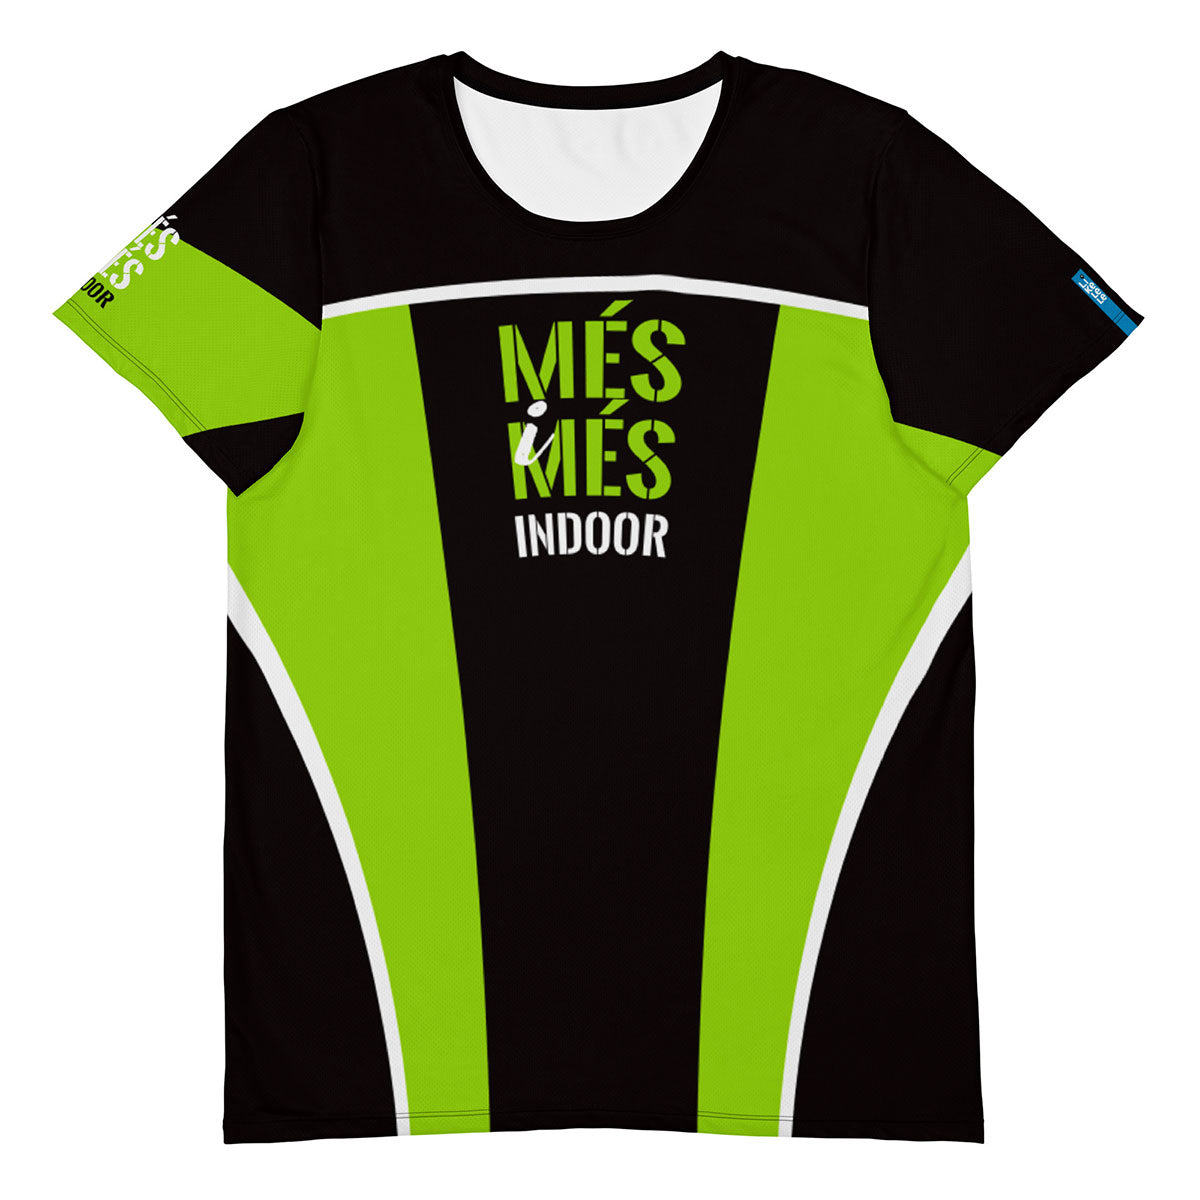 MÉS i MÉS INDOOR · Camiseta deportiva m/corta·Hombre · Premium·Full Print-255x1ipi